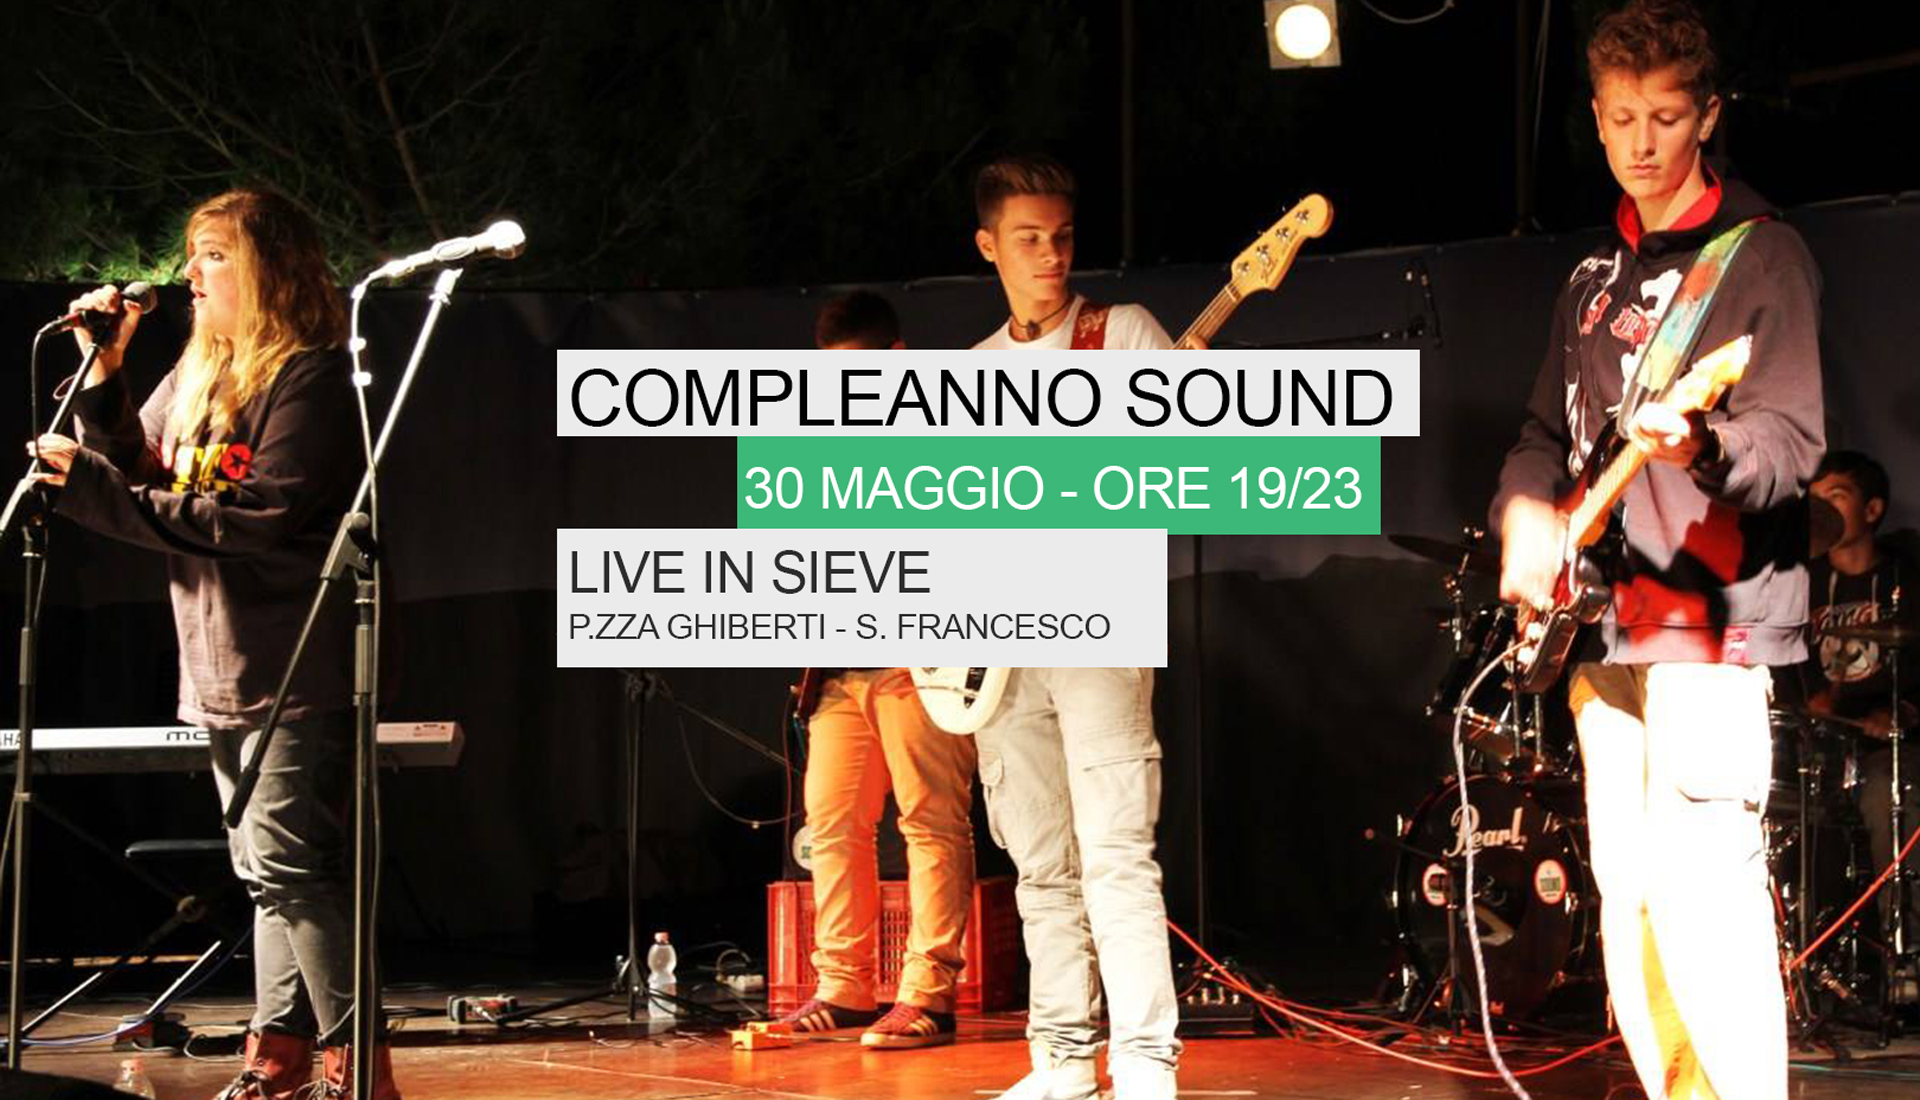 Compleanno Sound a Live in Sieve 30 Maggio in piazza Ghiberti a San ‎Francesco dalle 19 alle 23